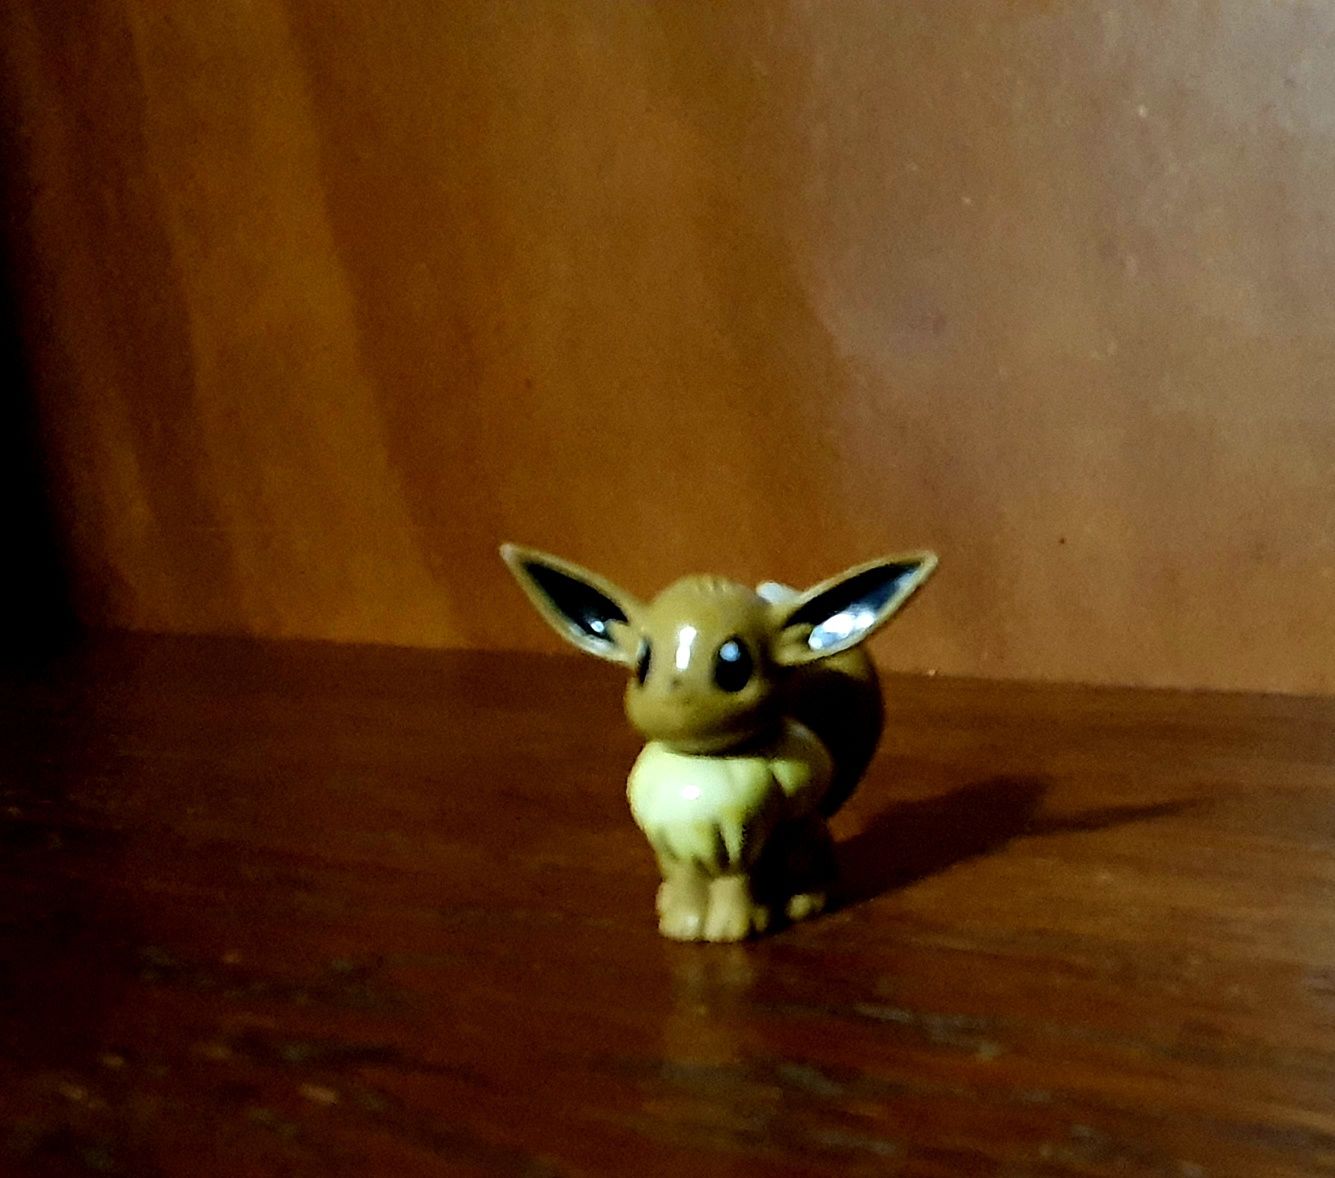 Figurine Tomy Pokemon: Eevee, Ratata, Ivysaur, Klinklang, Venusaur